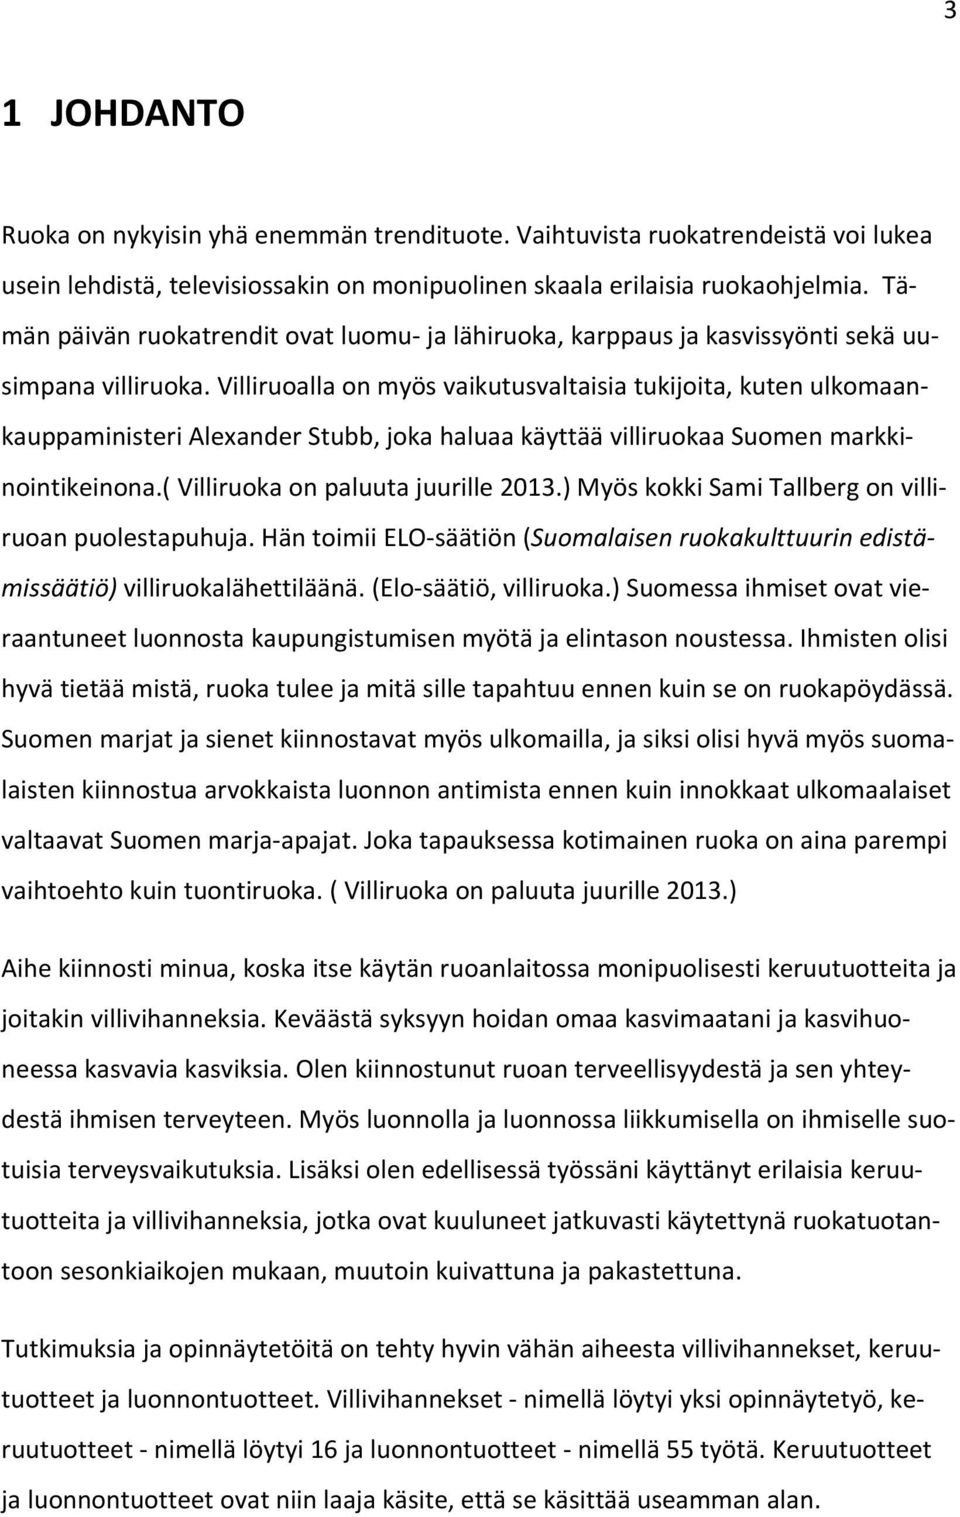 Villiruoalla on myös vaikutusvaltaisia tukijoita, kuten ulkomaankauppaministeri Alexander Stubb, joka haluaa käyttää villiruokaa Suomen markkinointikeinona.( Villiruoka on paluuta juurille 2013.